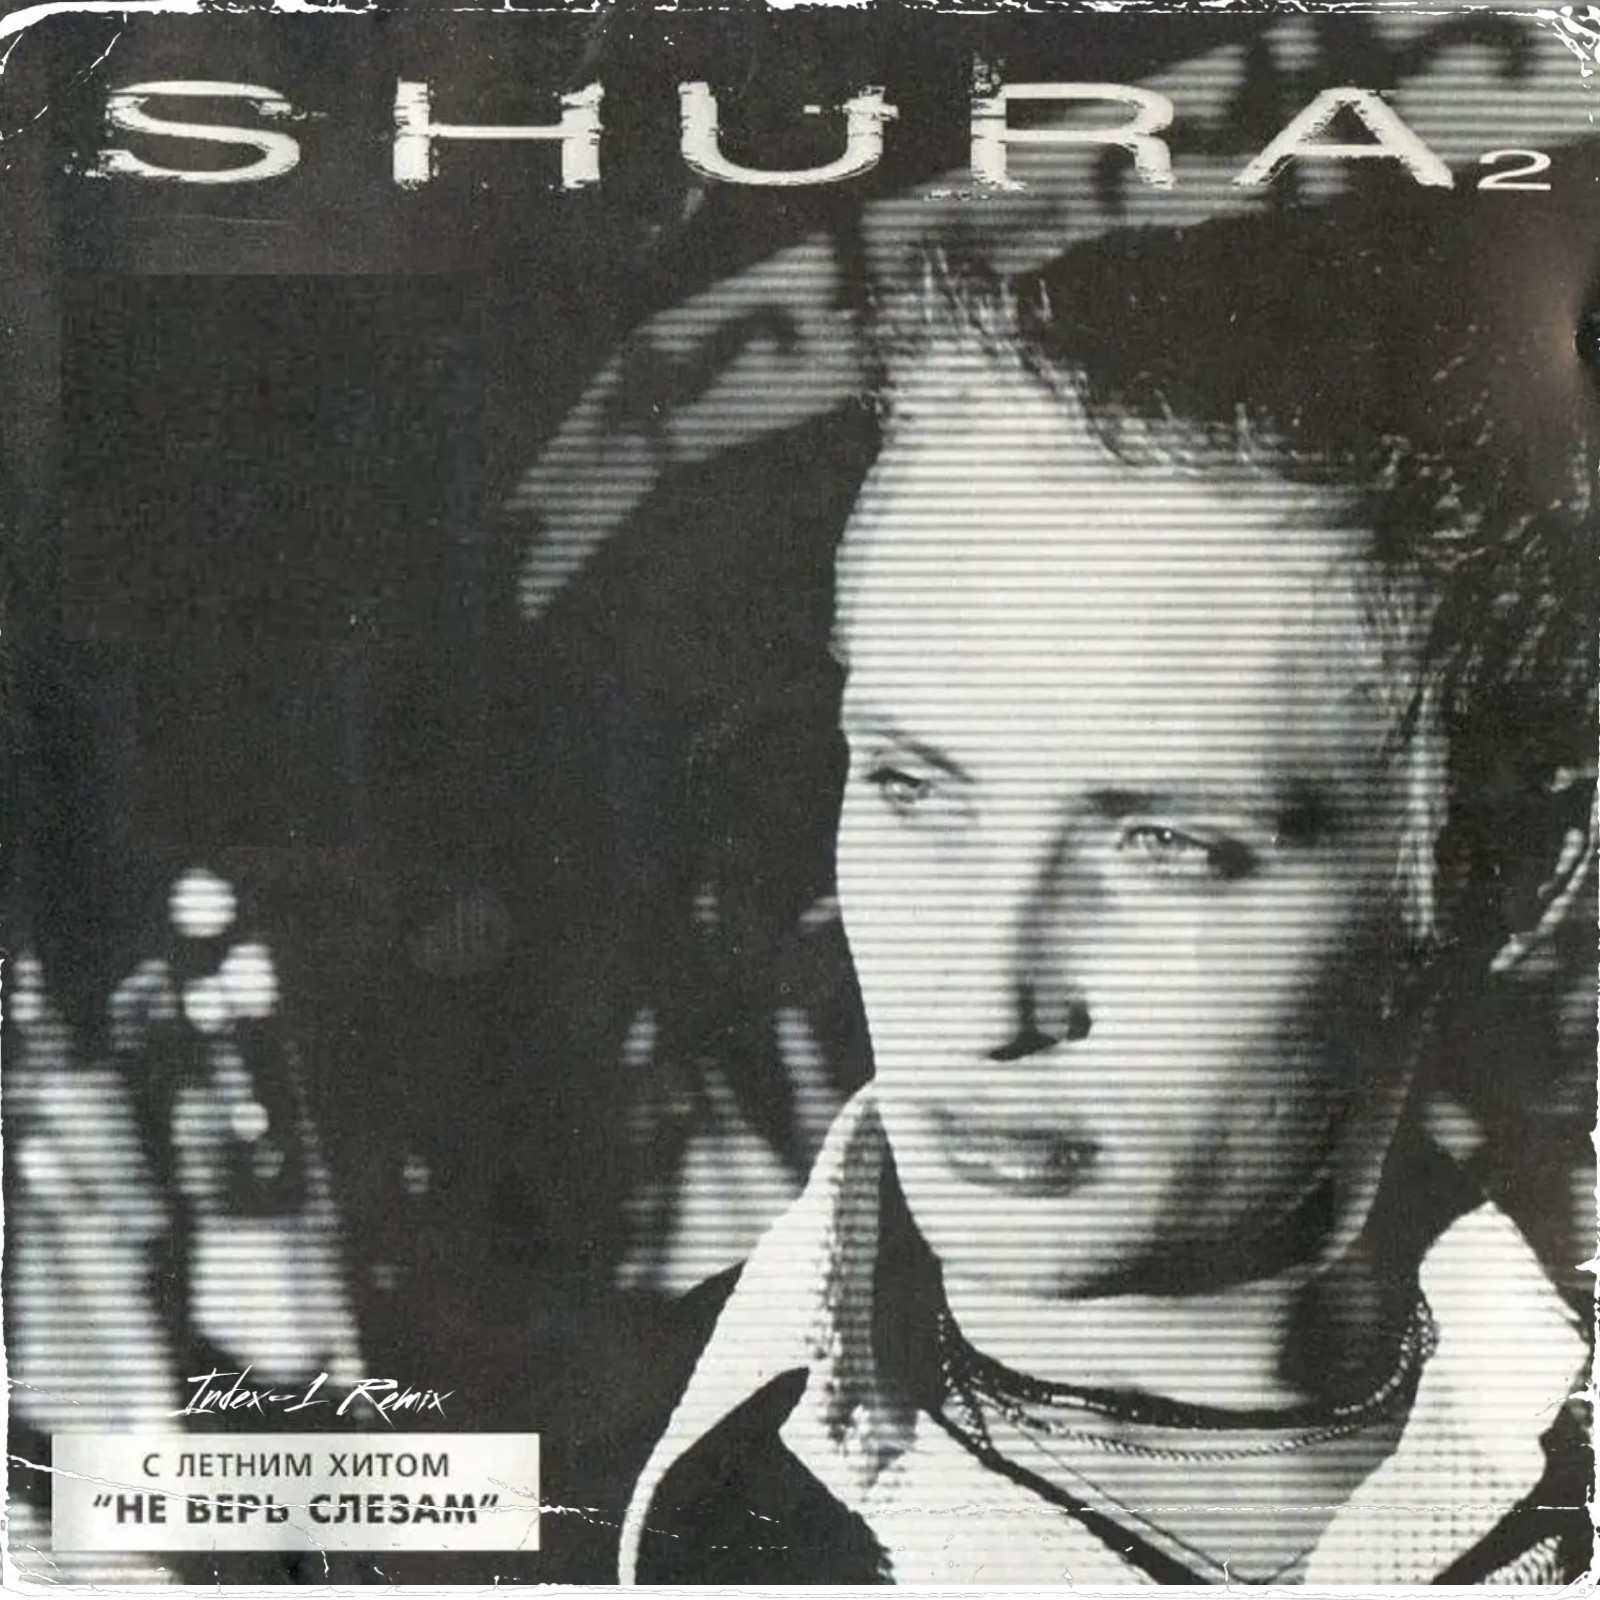 Тв не верит слезам. Шура Shura 2 1998. Шура альбом 1998. Шура ты не верь слезам 1998. Шура Shura 2 1998 обложка.